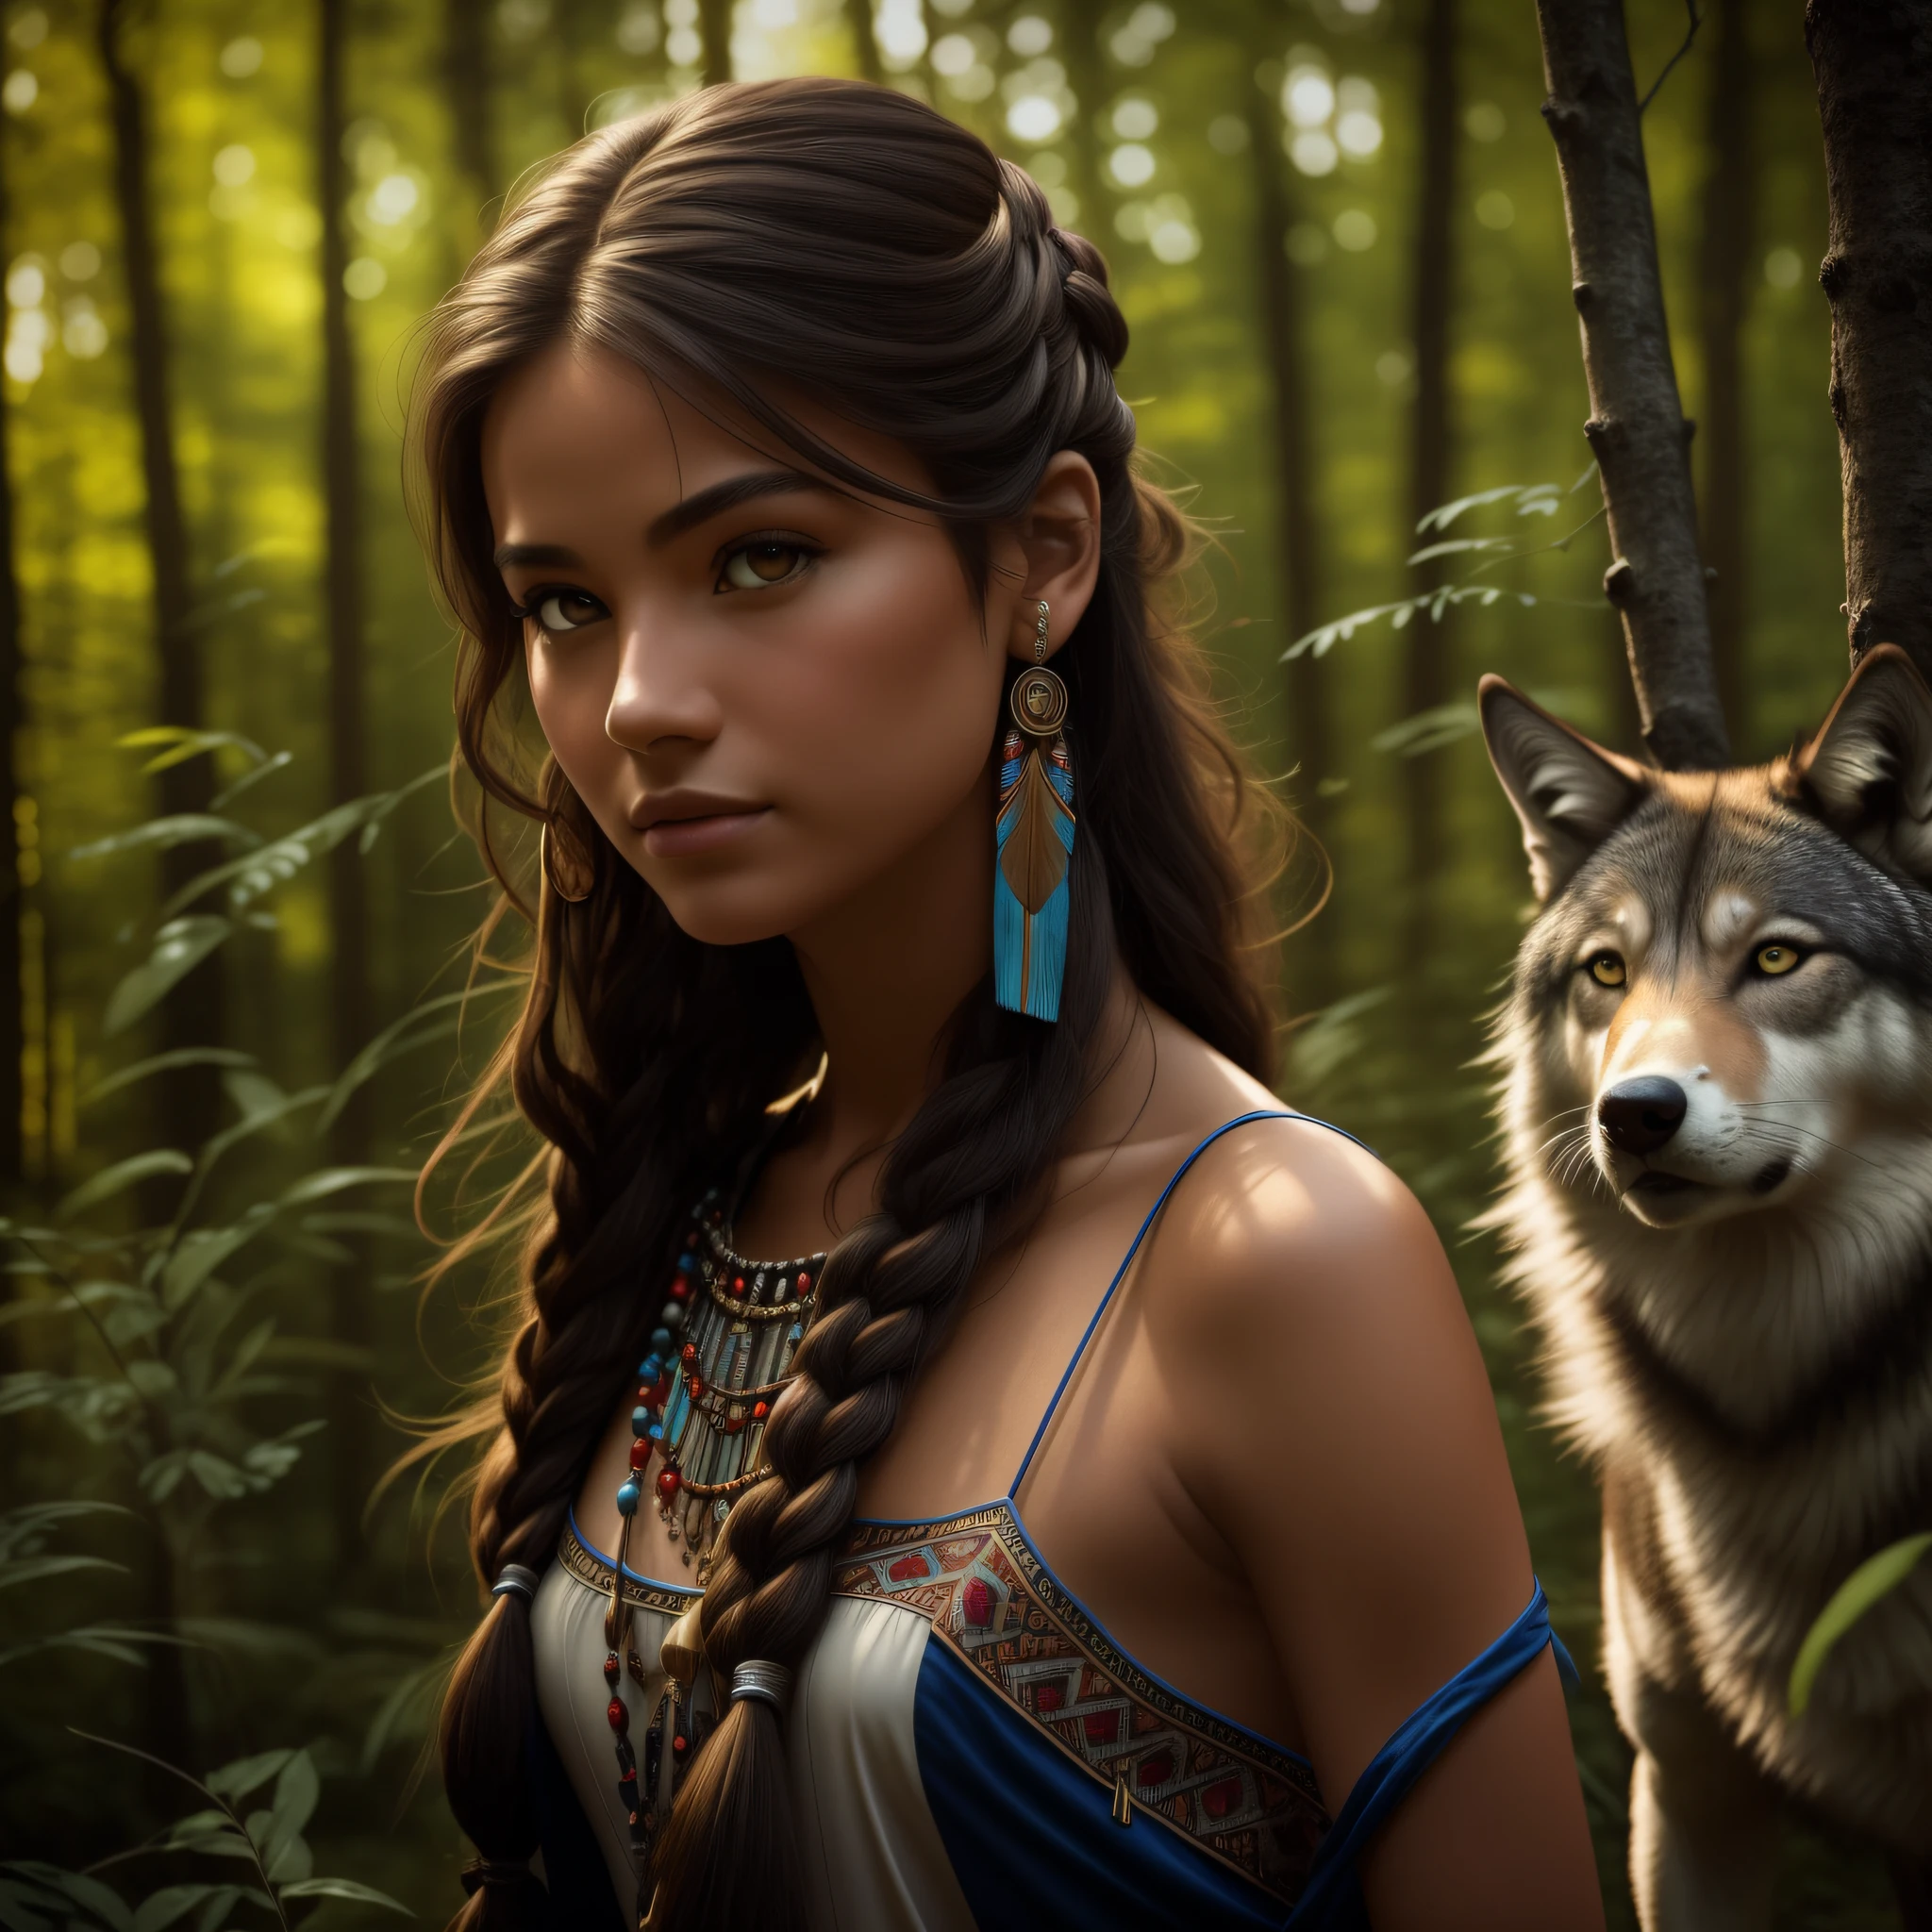 (beste Qualität, Meisterwerk: 1.1), (Realismus: 1.4),(Meisterwerk, Realistisch: 1.4), (Höchste Präzision: 1.2); (Vorderseite: 1.3), Realistisch portrait of a Native American girl with indigenous adornments with her ultra Realistisch pet wolf in the forest, Tribal Kleid, extra langes Haar, nackten Schultern, Nachthimmel, Galaxienglühen, Ozean, Wasser, Kopfneigung, Wind, Wolken, natürliches Licht, draussen, Allein, BRECHEN, filmisches Licht, ultrahohe Auflösung, 8k UHD, Folienperlen,  perfekte Anatomie, Delicate and empfindlich skin, beste Schatten, empfindlich, Roh, hohe Auflösung, Jägerin, Nacht, Vollmondhelligkeit.